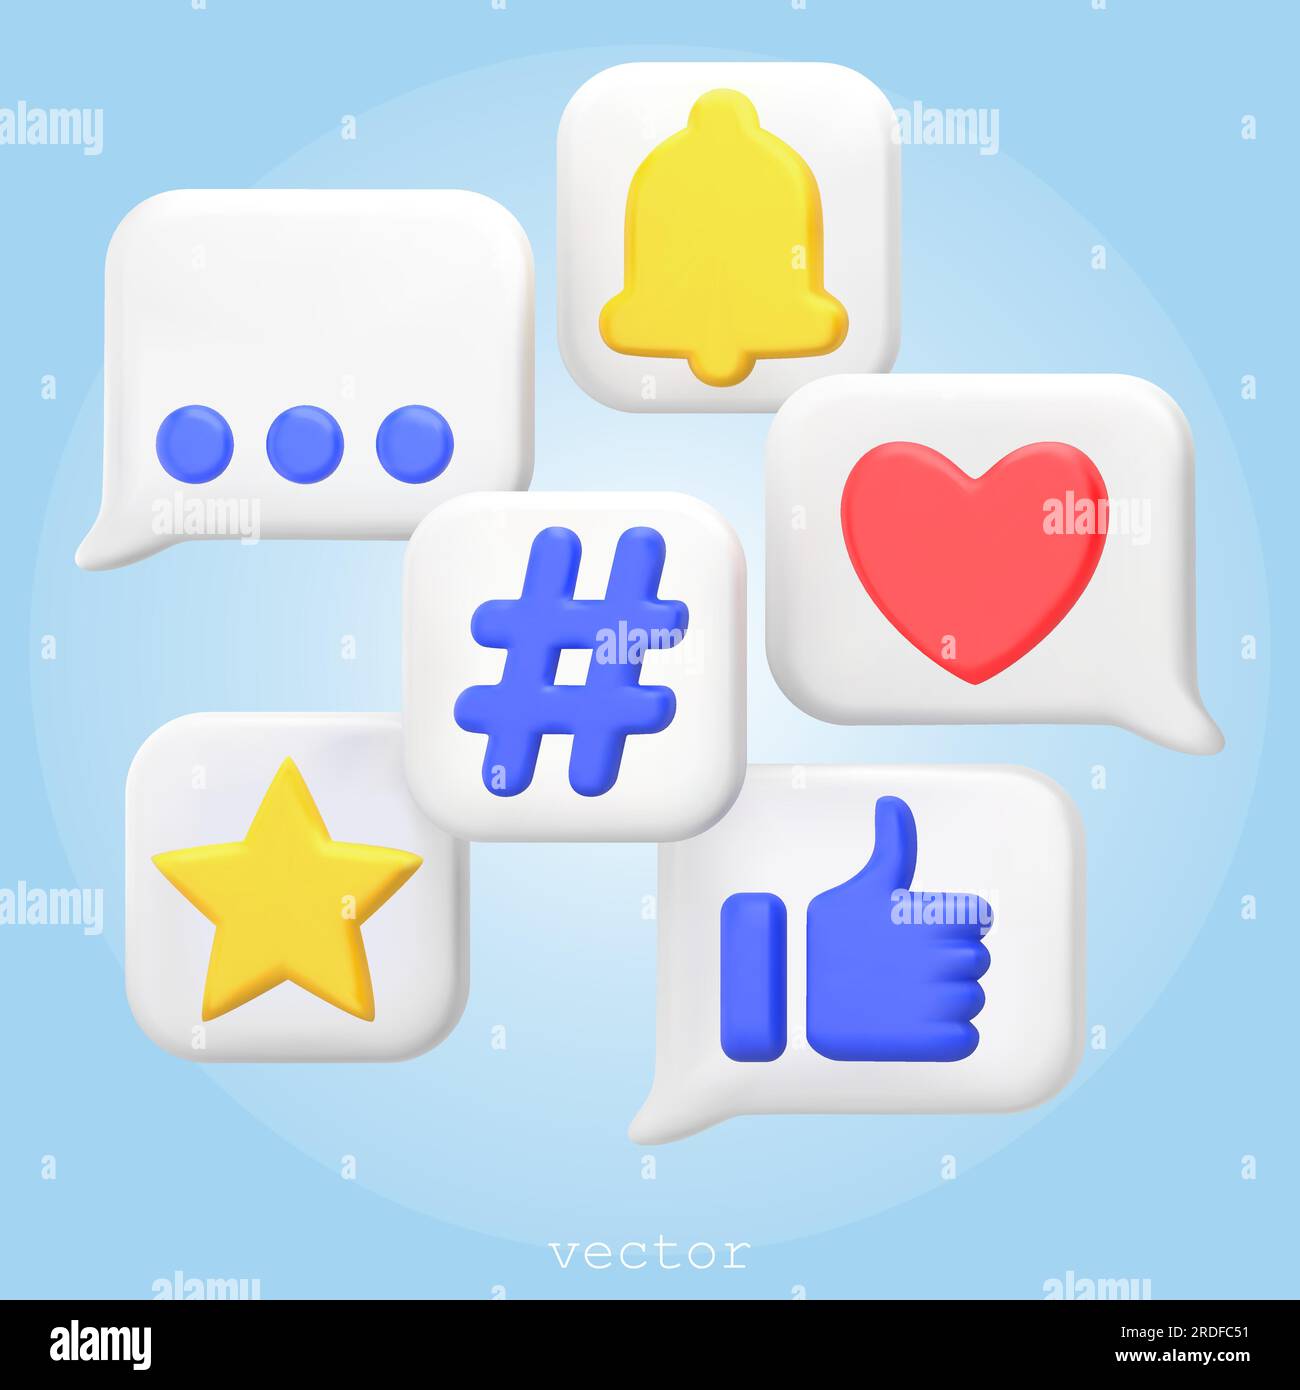 3D Rendern von Social-Media-Symbolen. Sprechblasen mit Zeichen. Gefällt mir, Favoriten, Hashtag, Benachrichtigungen. 3D Symbole für Webdesign, mobile Apps, Social medi Stock Vektor